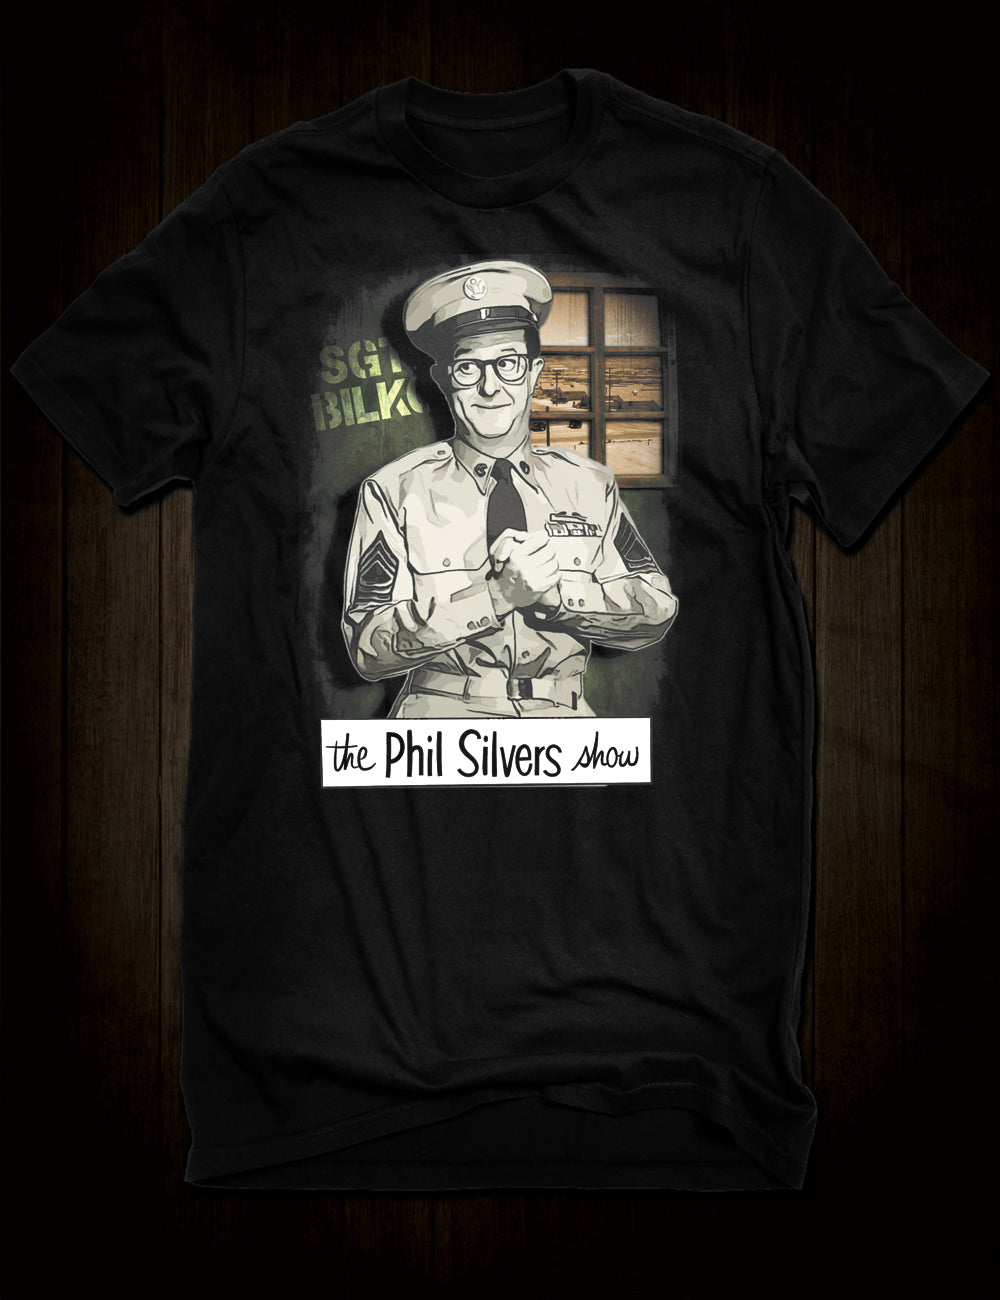 Phil Silvers - Sgt. Bilko T-Shirt Classic Sitcom